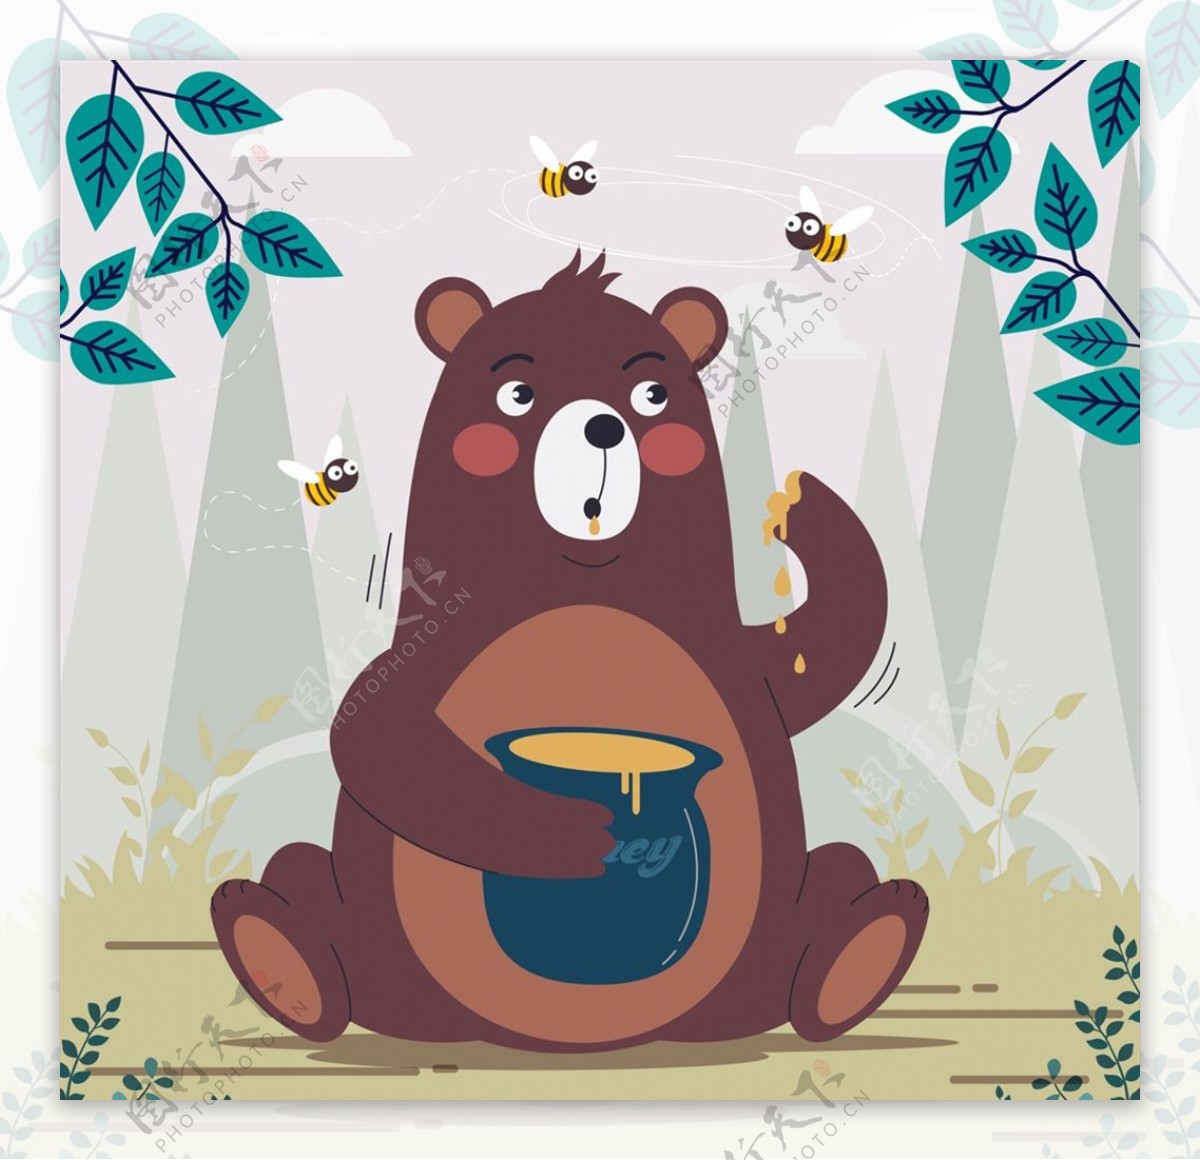 吃蜂蜜的棕熊图片